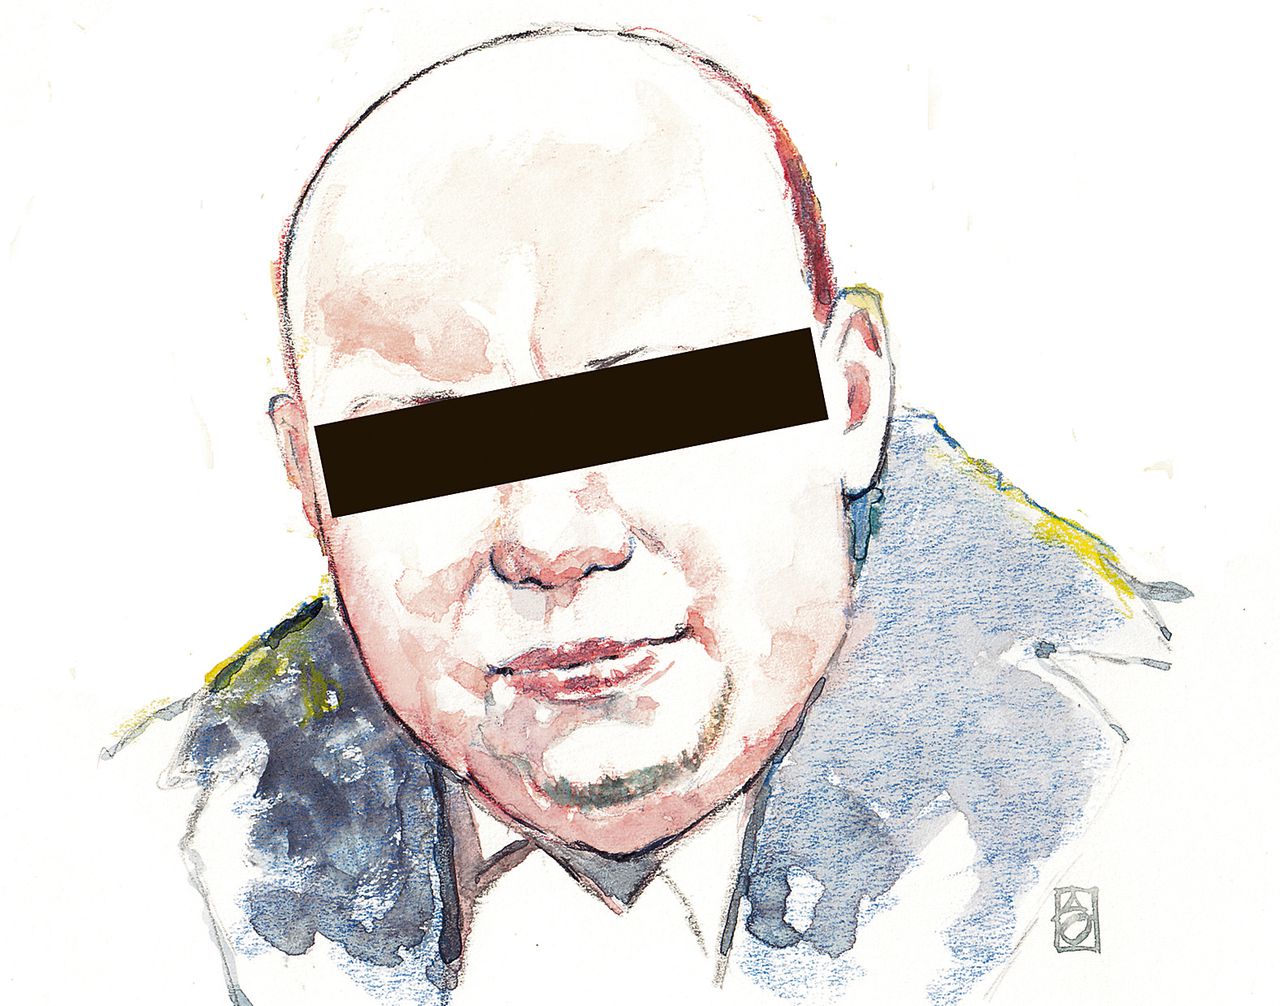 Aquarel van Mark M., de Weertse politieagent die ervan wordt verdacht gevoelige informatie te hebben verkocht aan criminelen.